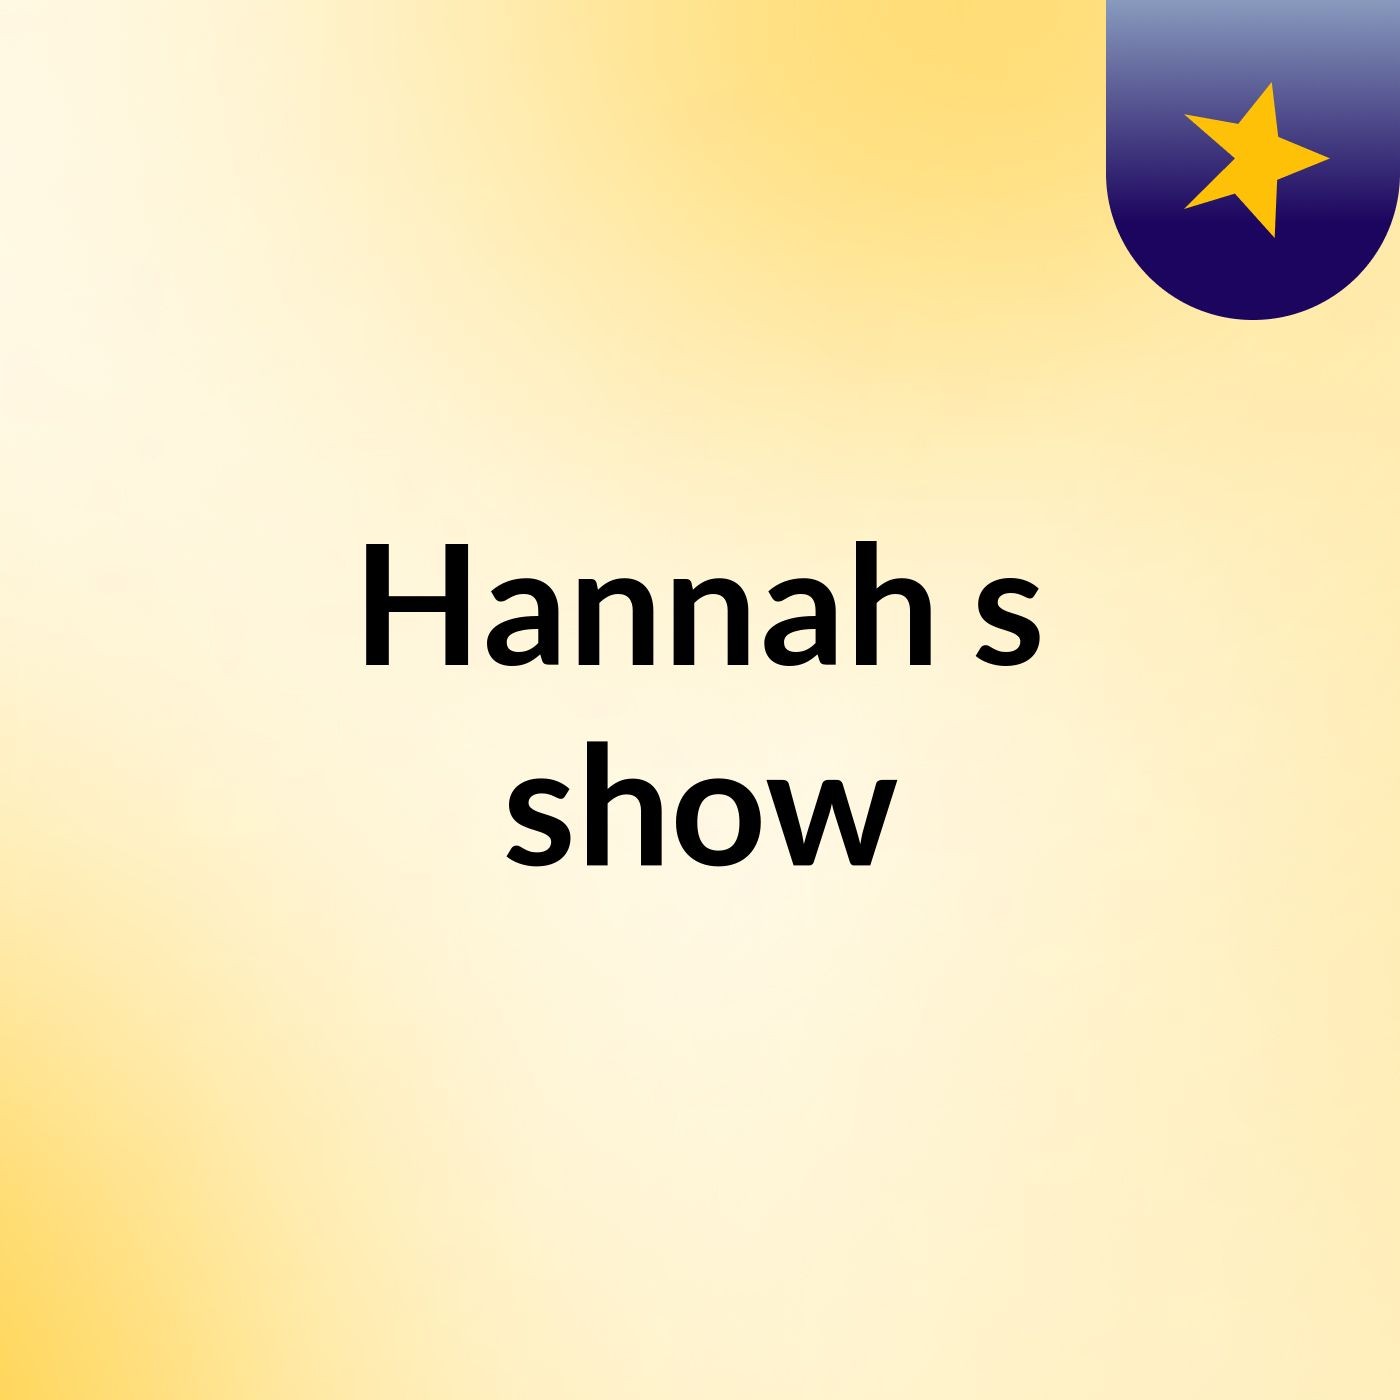 Hannah's show